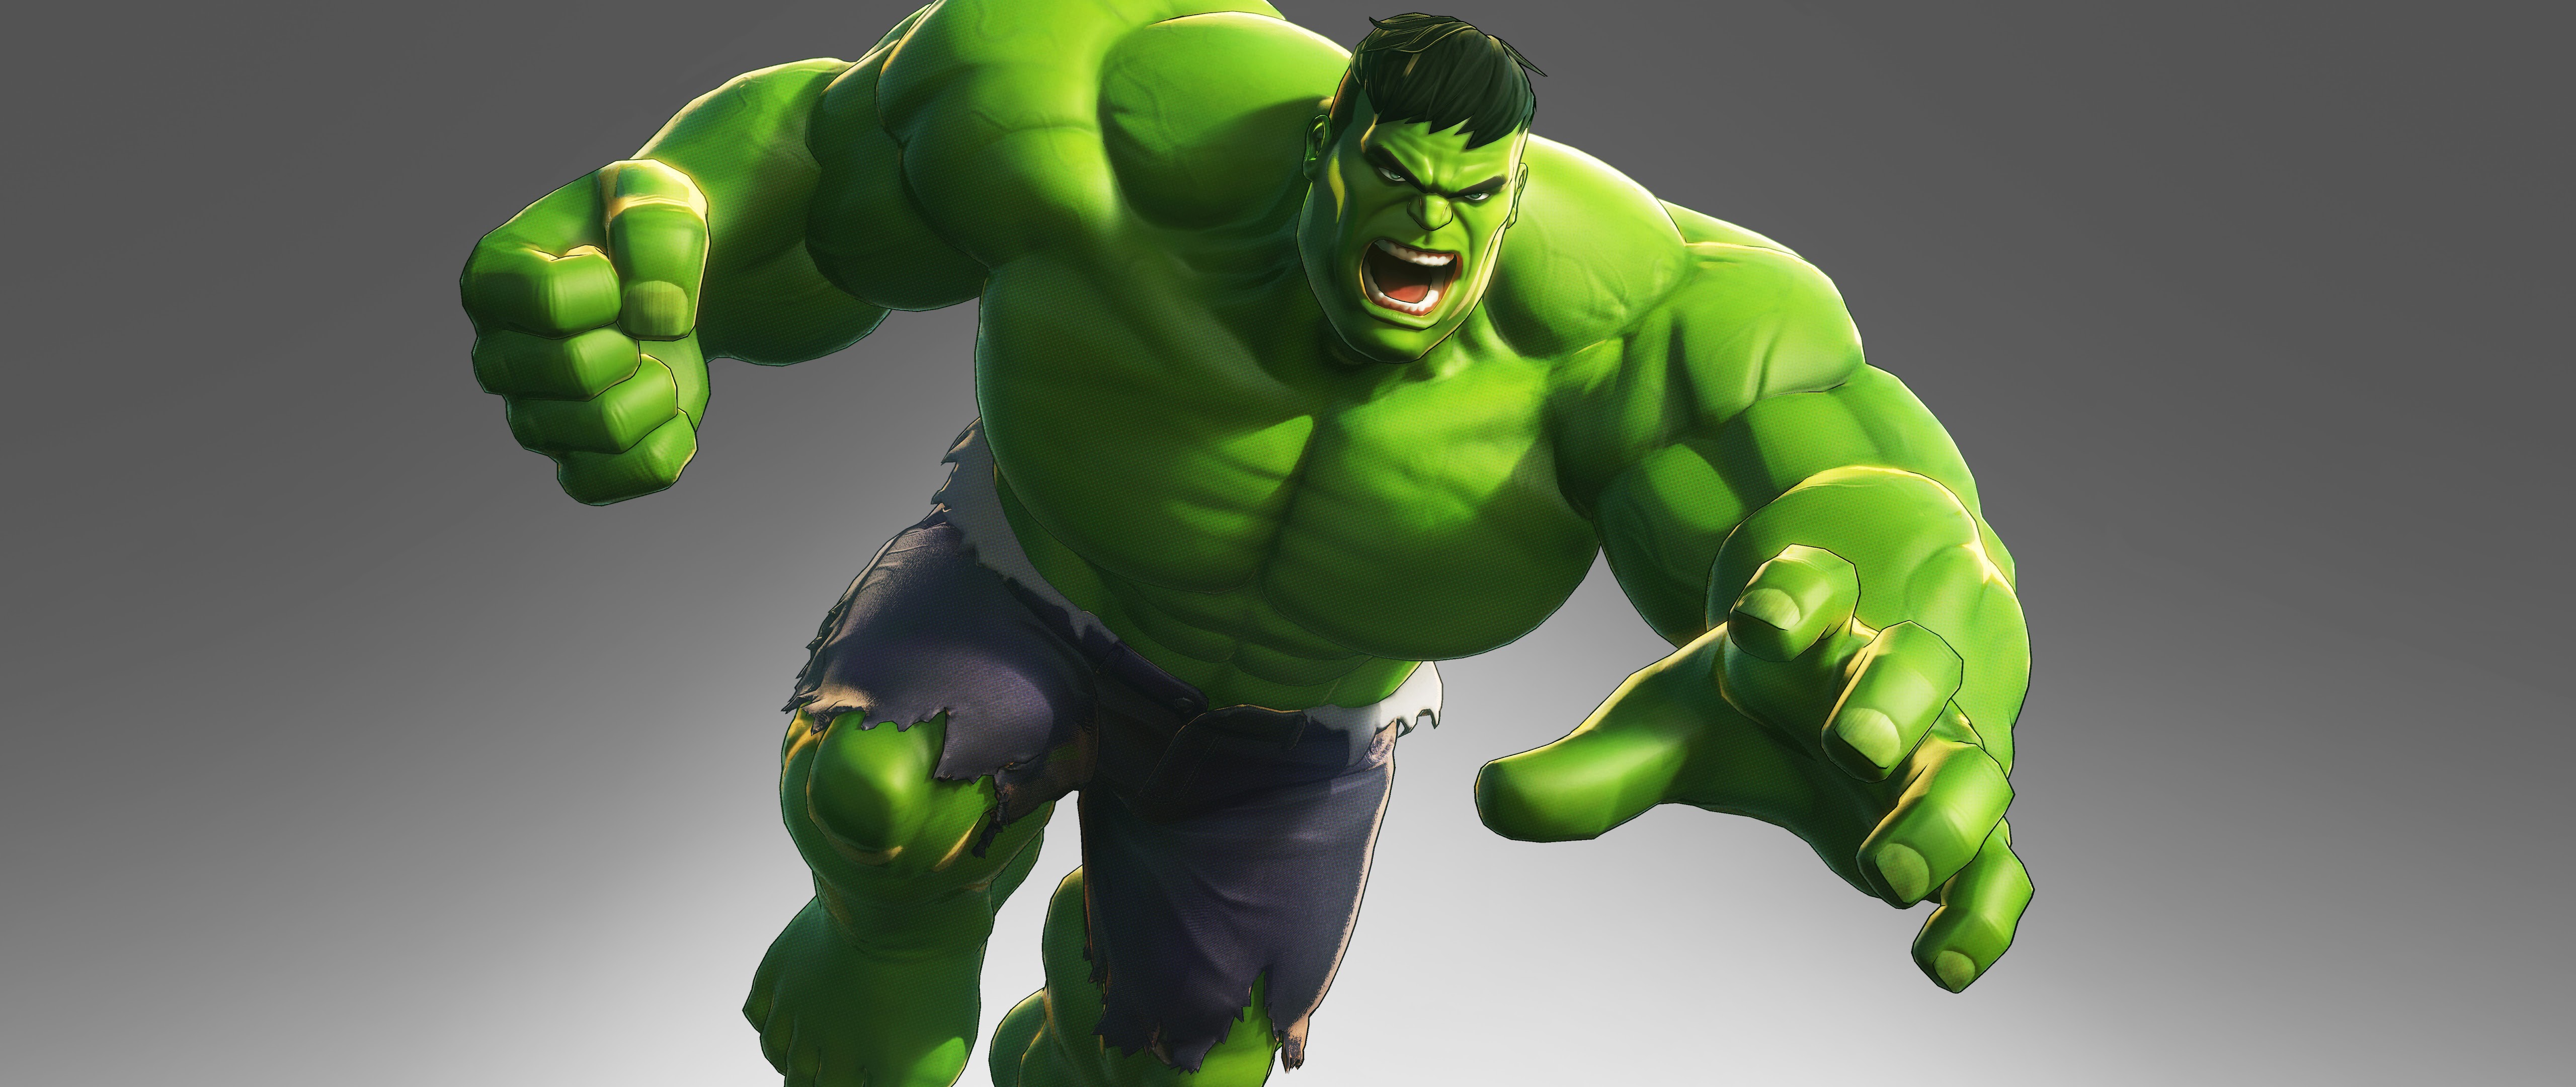 Hulk Marvel Ultimate Alliance 3 8K Wallpaper #42